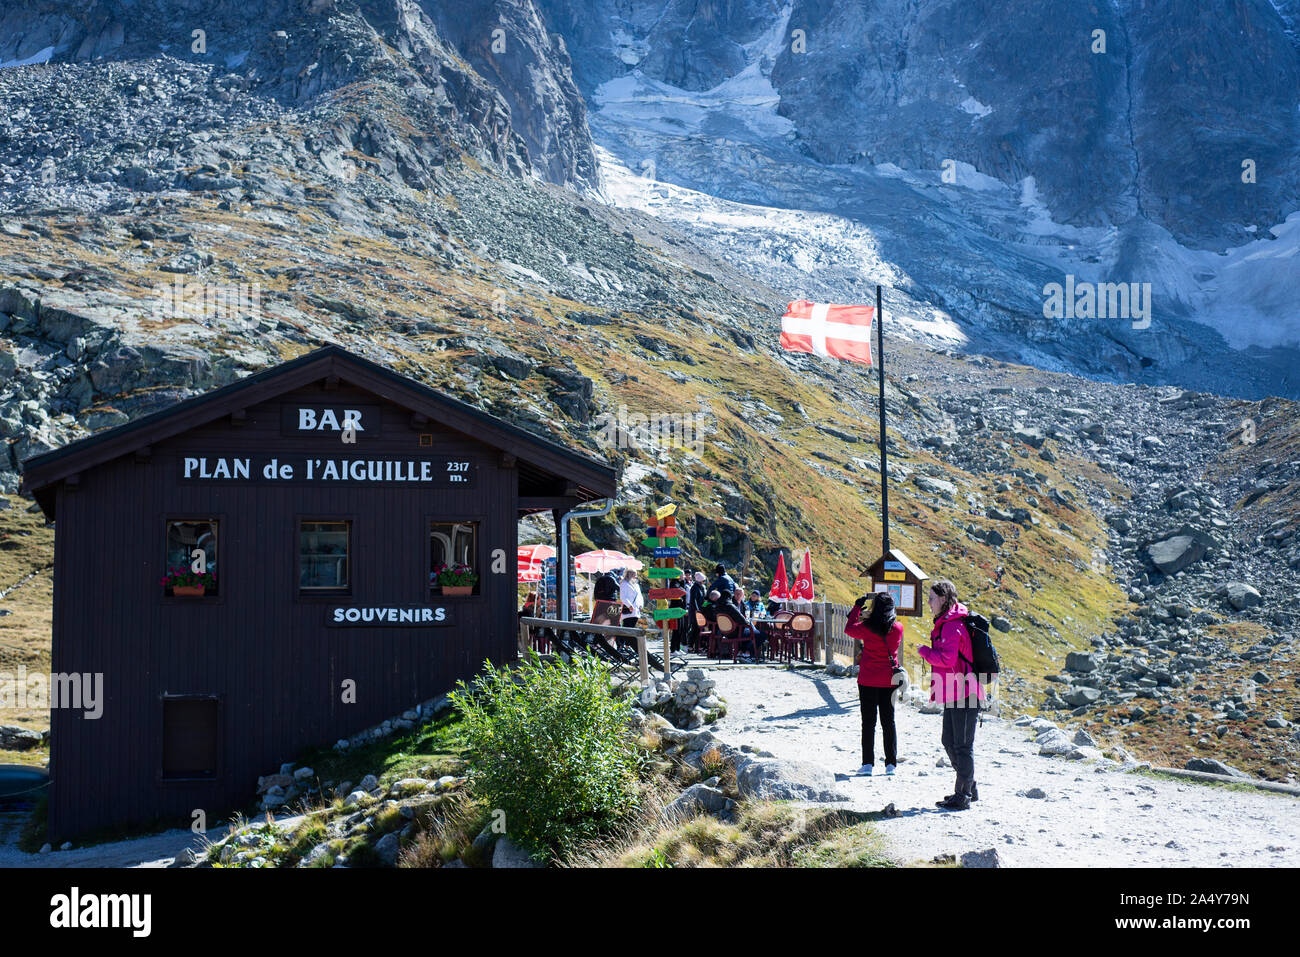 Plan de l'Aiguille, Chamonix, France Stock Photo - Alamy